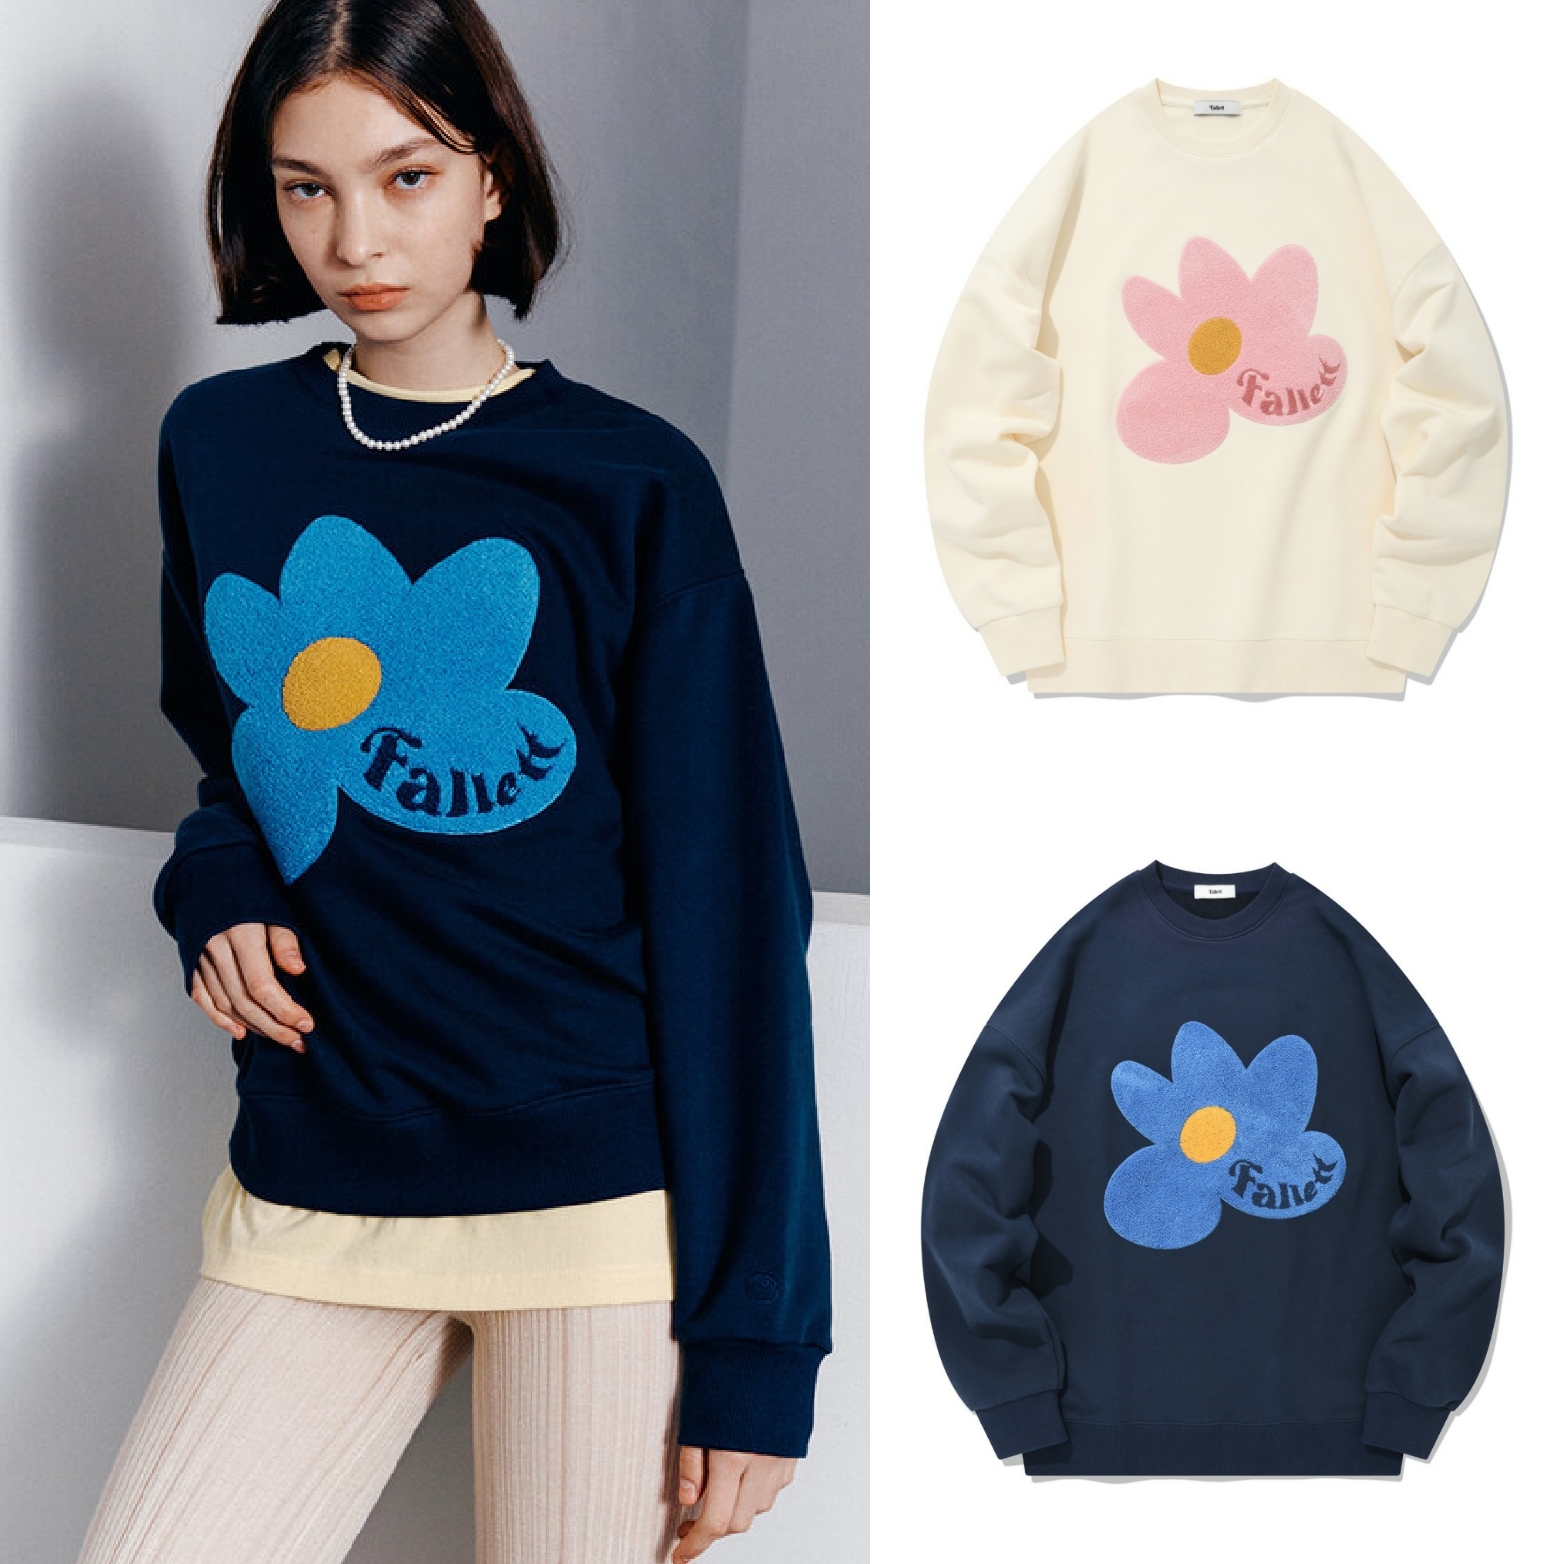 fallett] Boucle Flower Sweatshirt (2 colors)